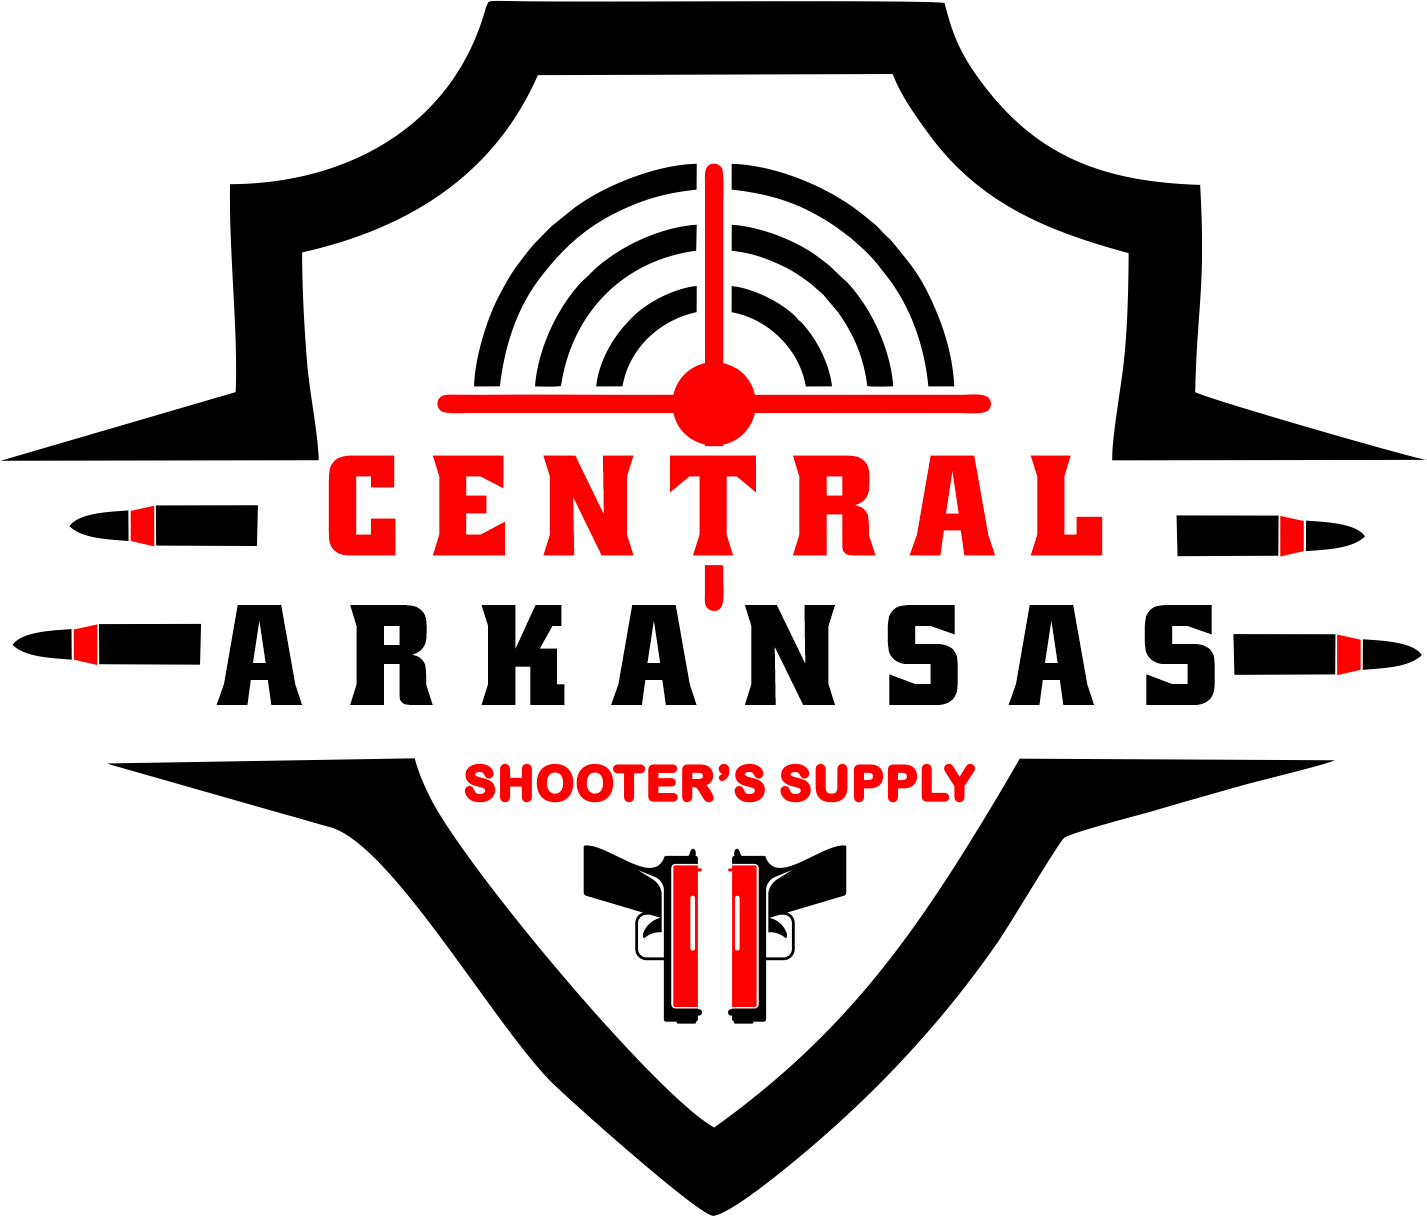 Central Arkansas Shooter's Supply LLC